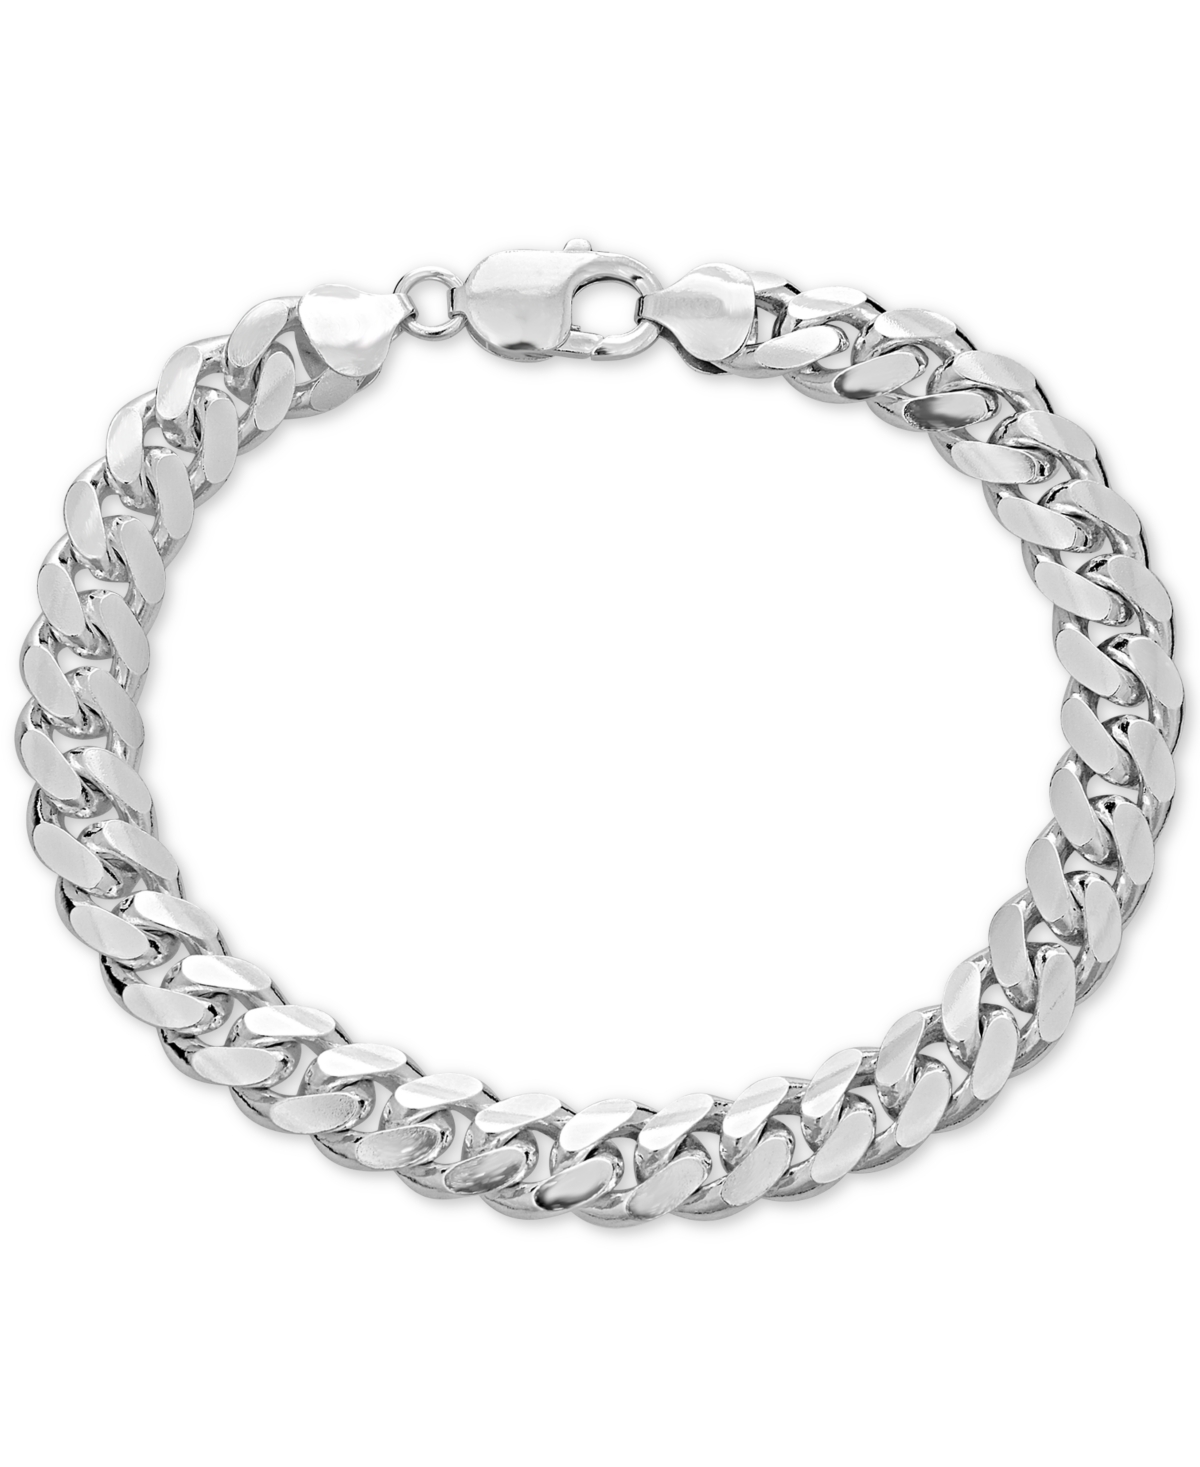 Men's Solid Cuban Link Chain Bracelet in Sterling Silver - Silver